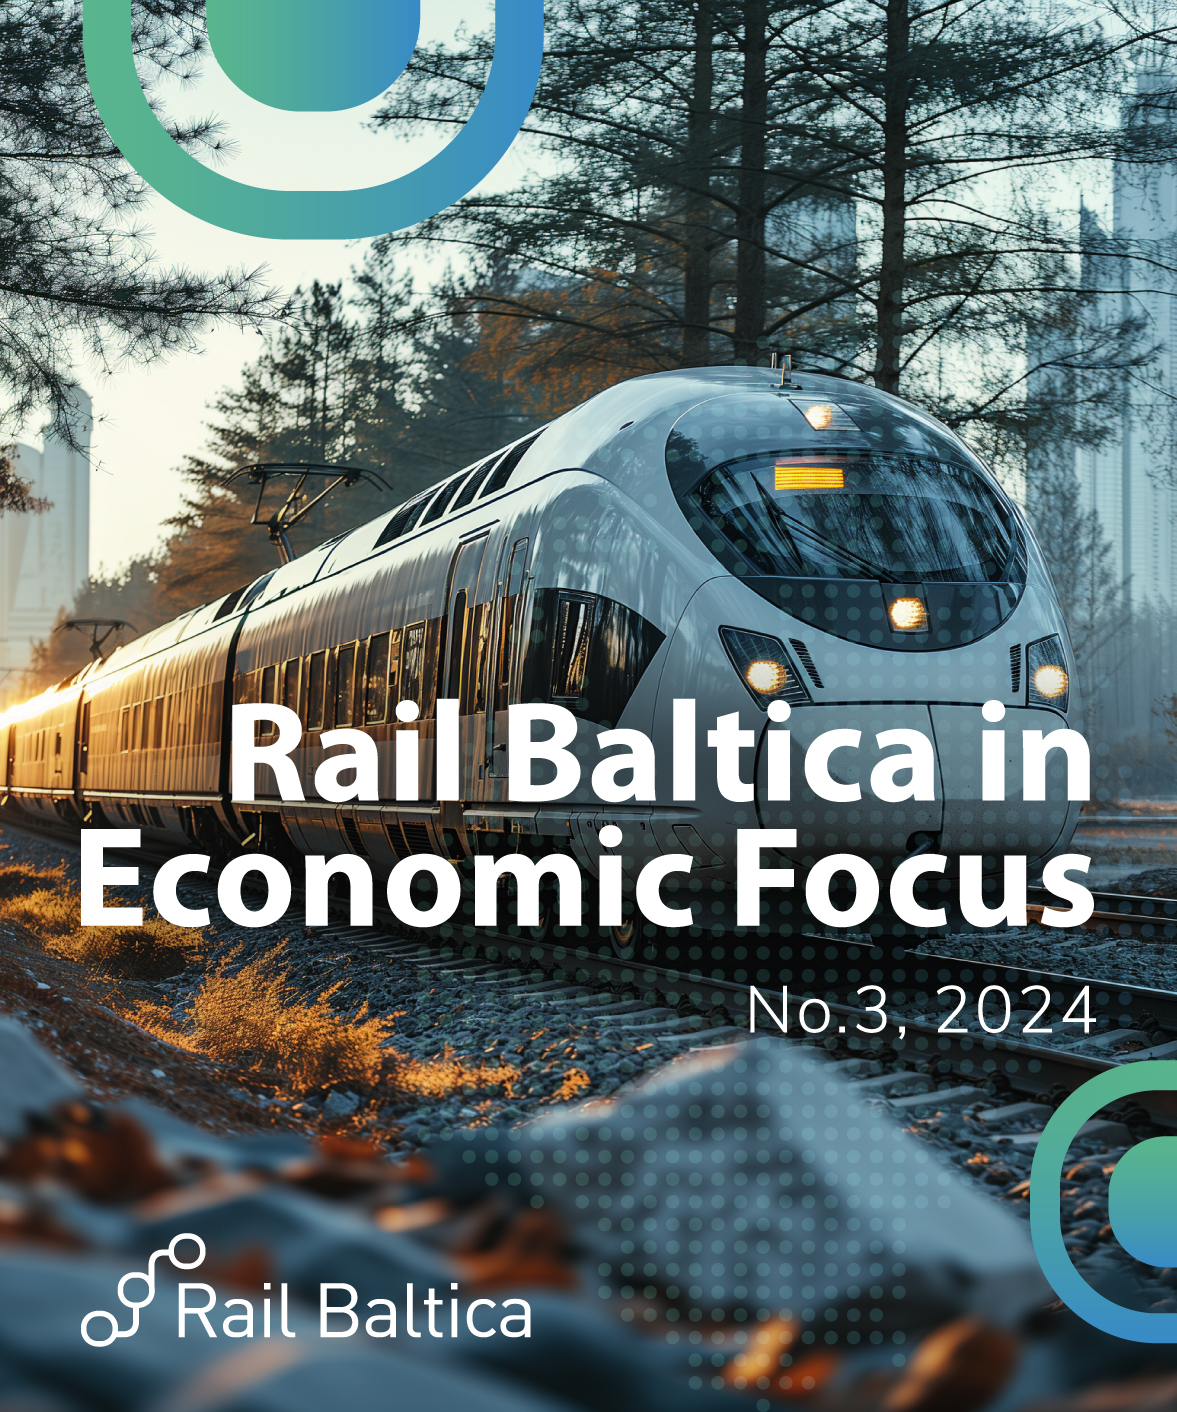 rail baltica economic